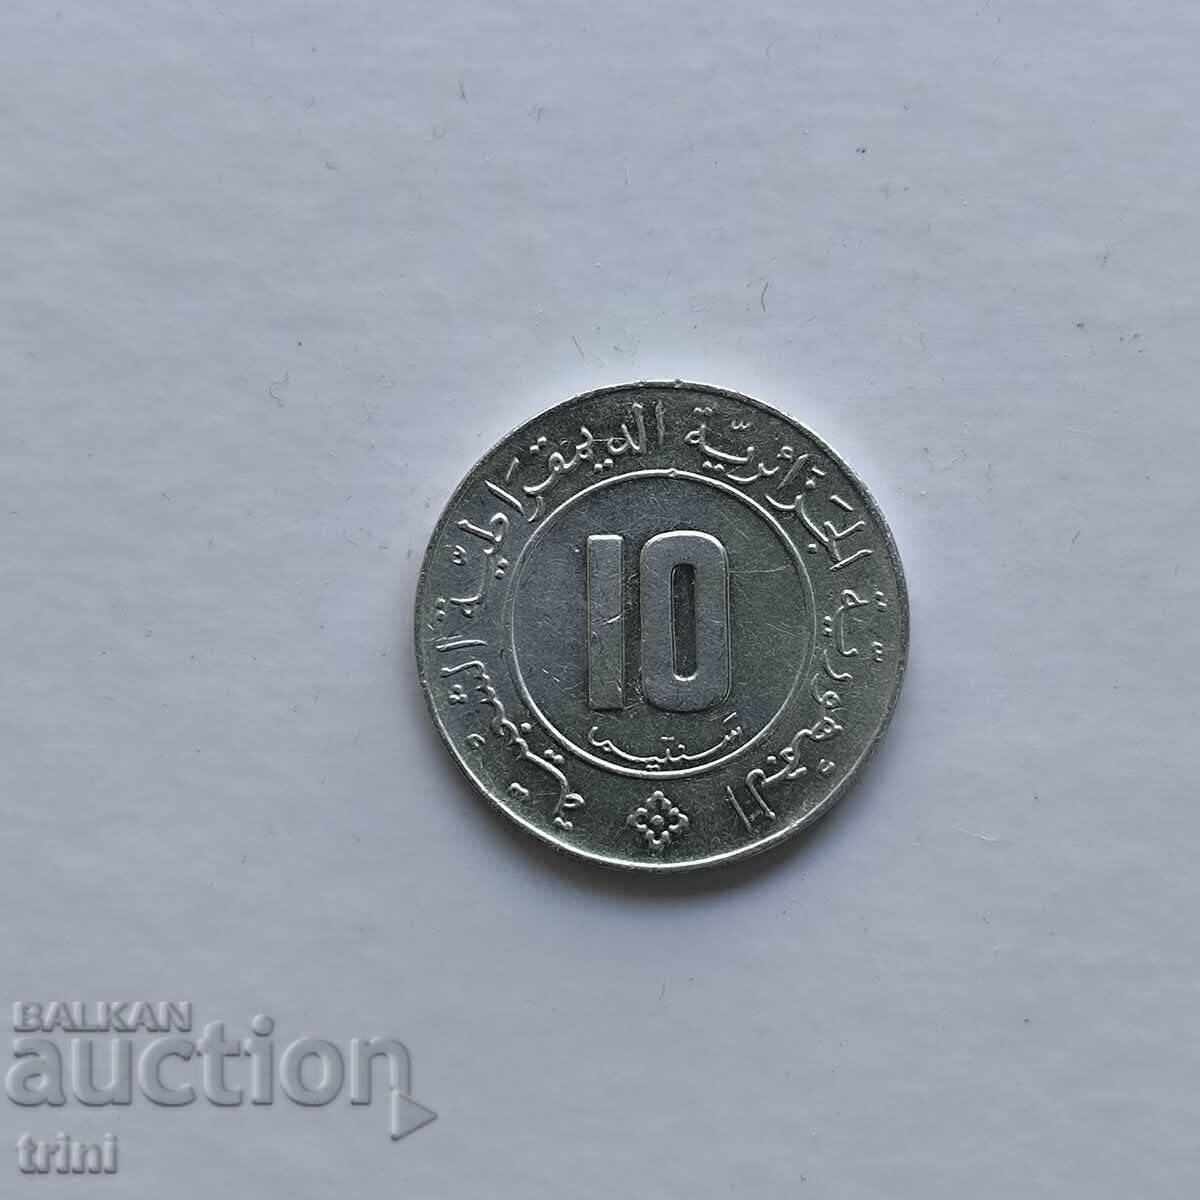 Algeria 10 centimetri 1984